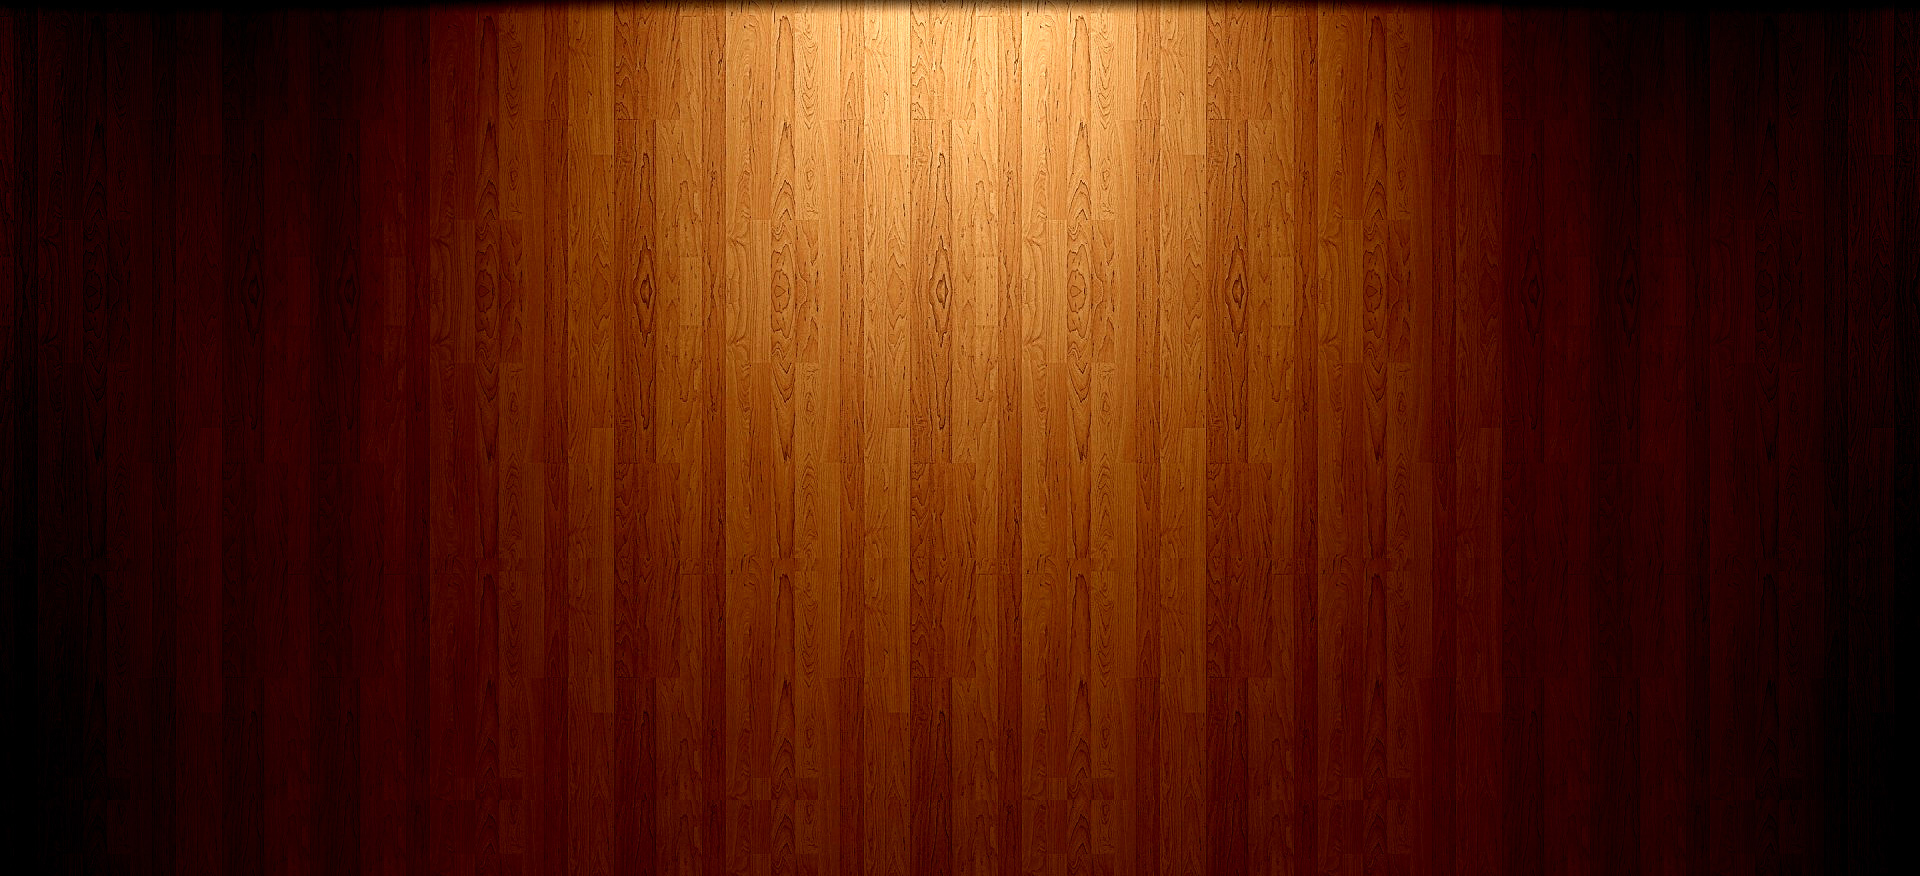 Plywood Background Image